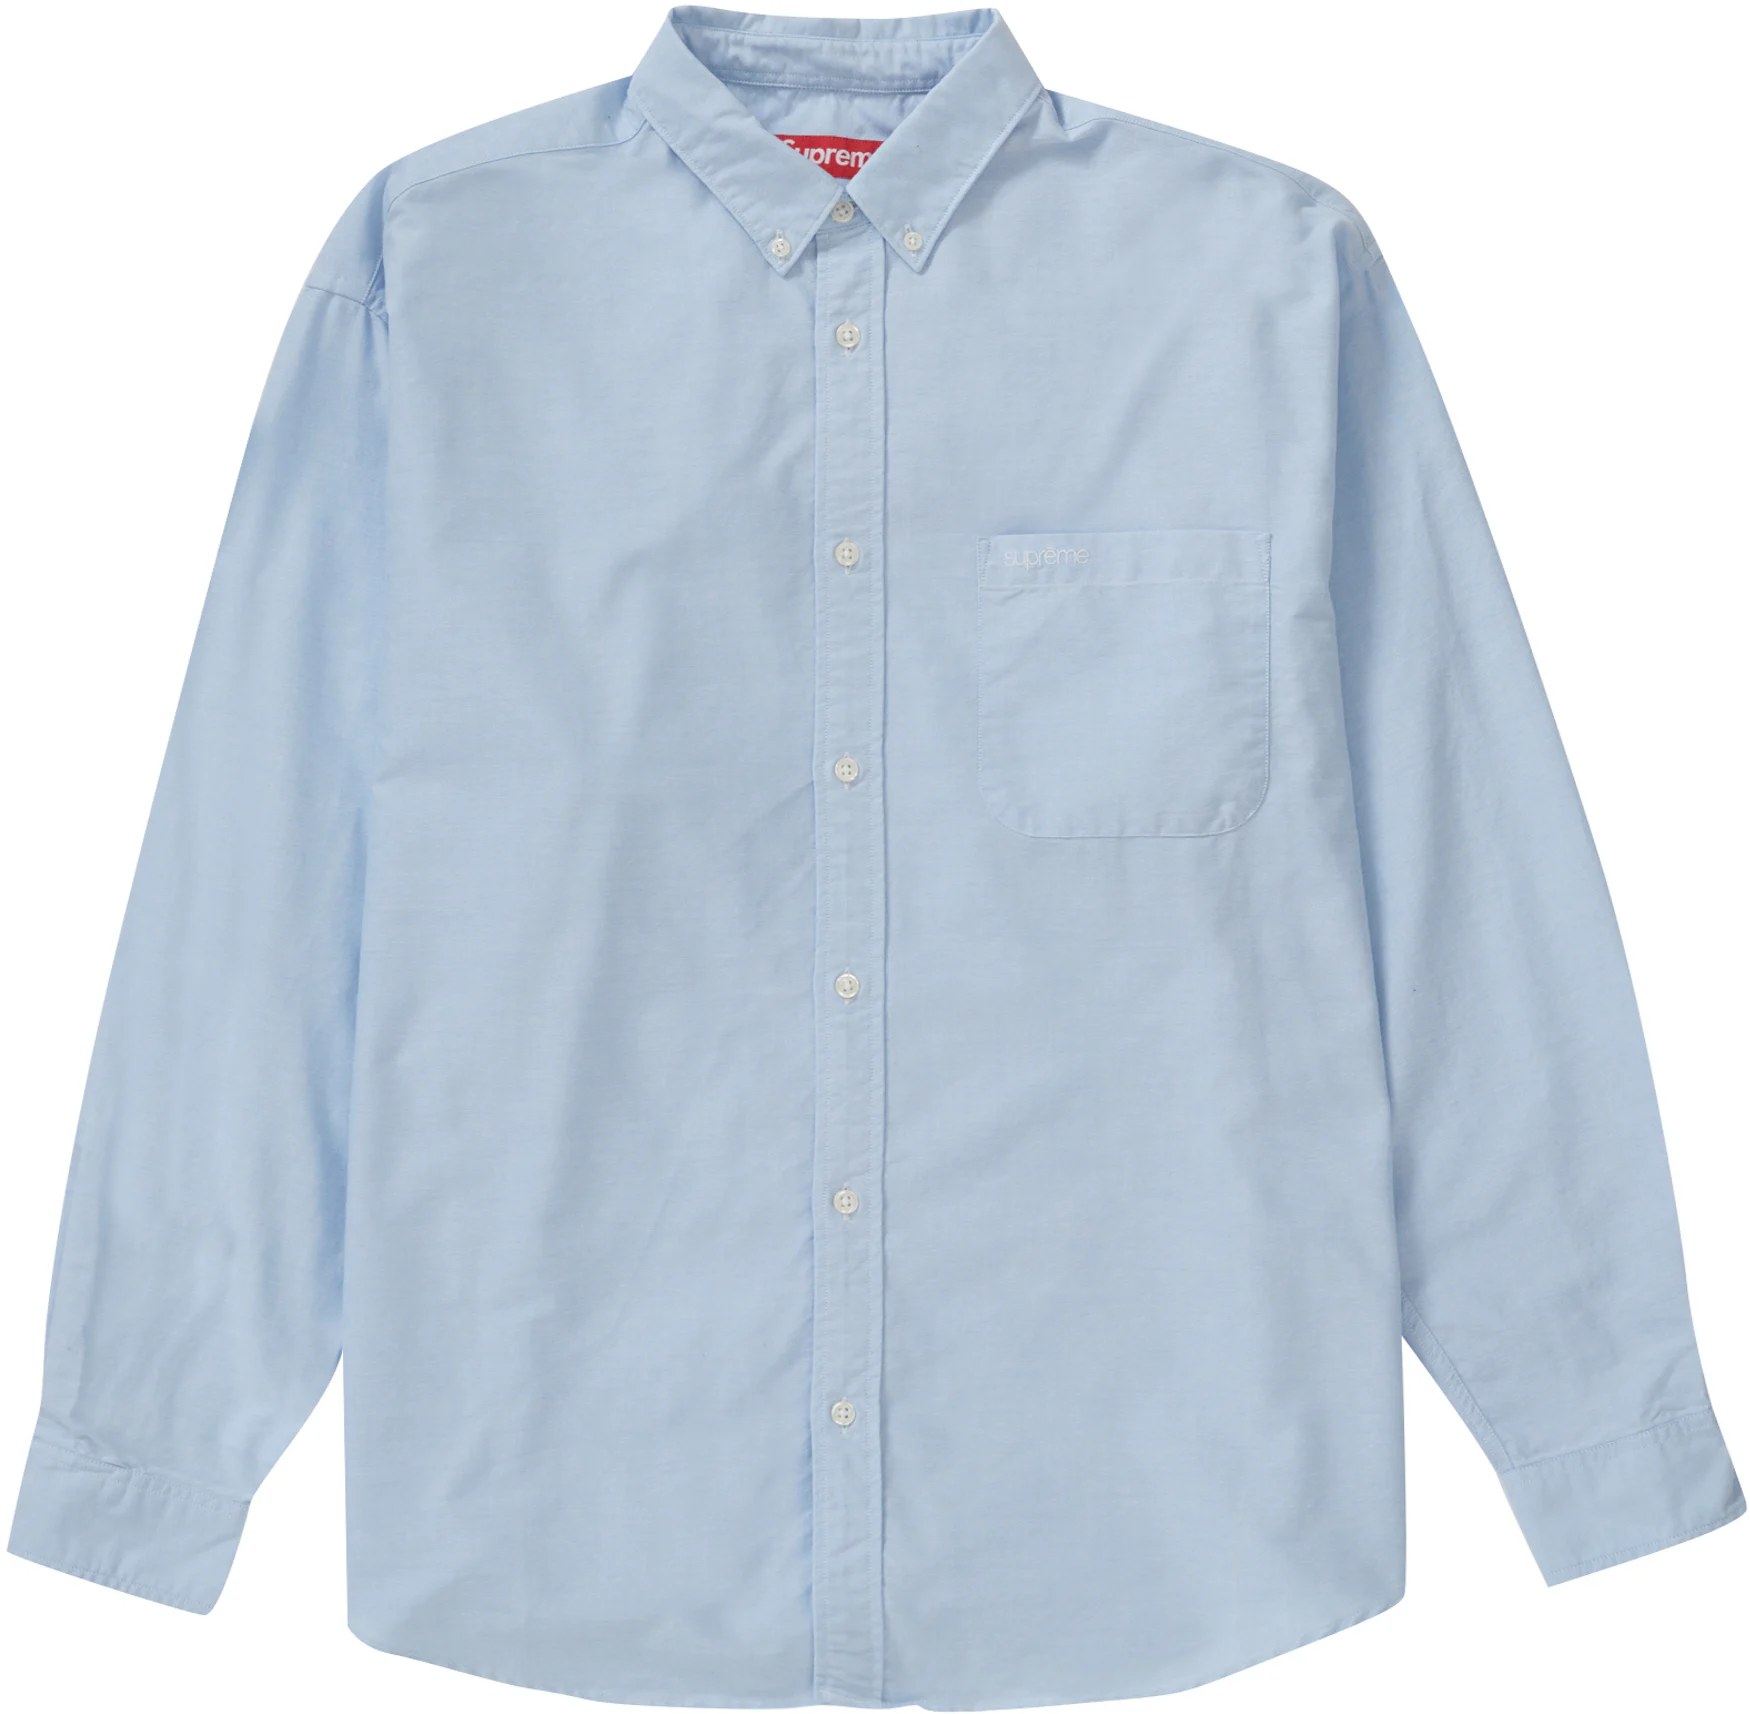 Supreme Oxford Button Down Shirt LS Navy Blue Size XL Box Logo